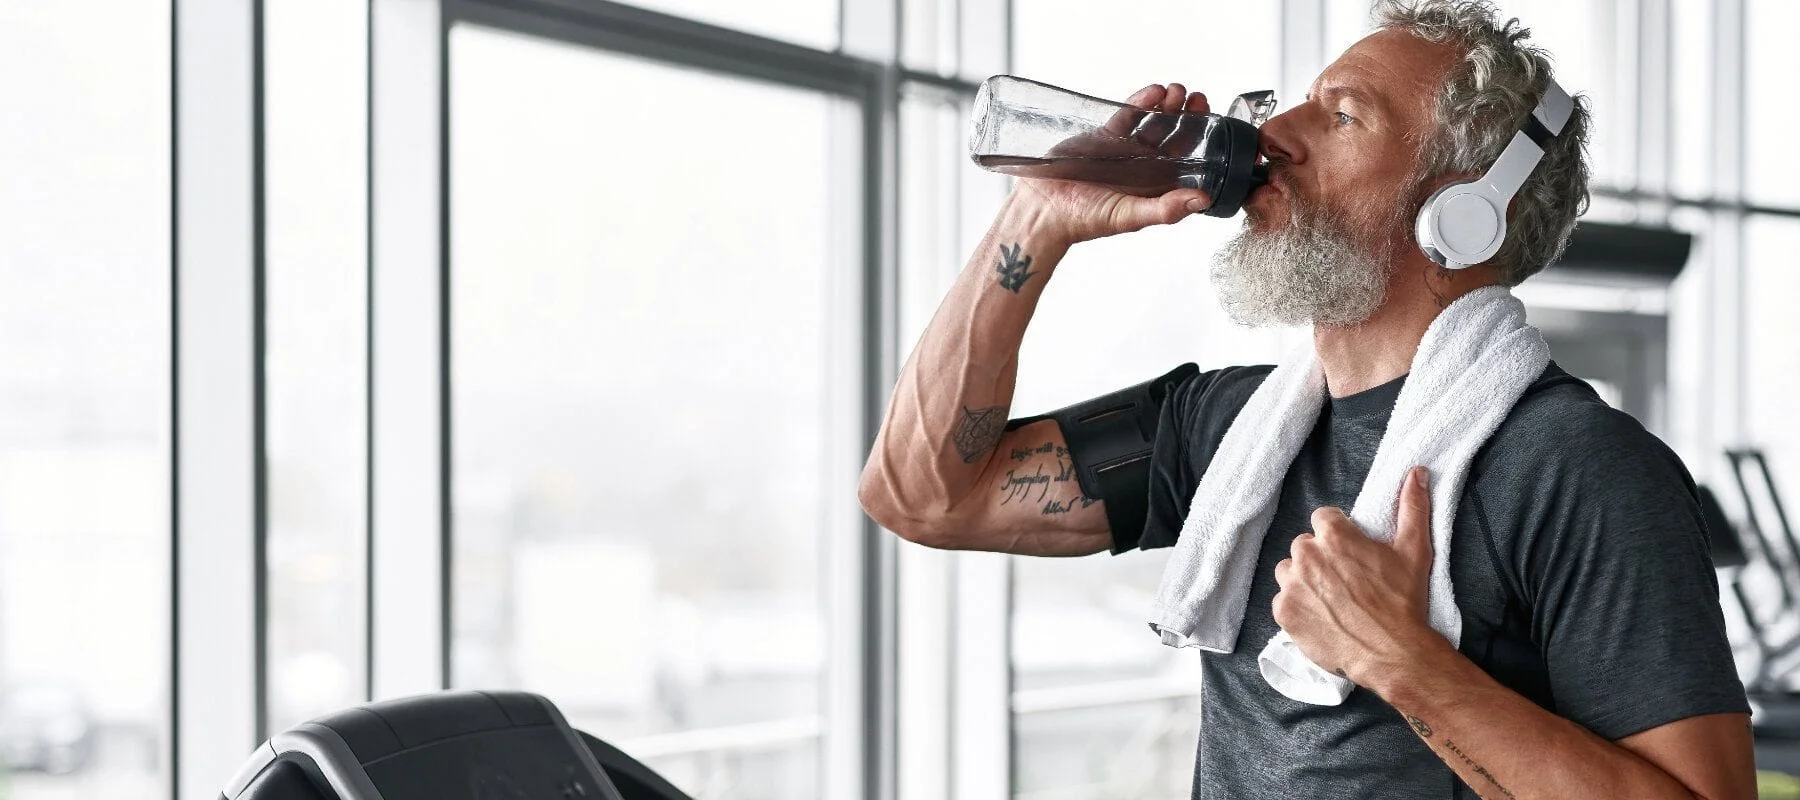 Fit Elderly Man on Treadmill Drinking Water Bottle